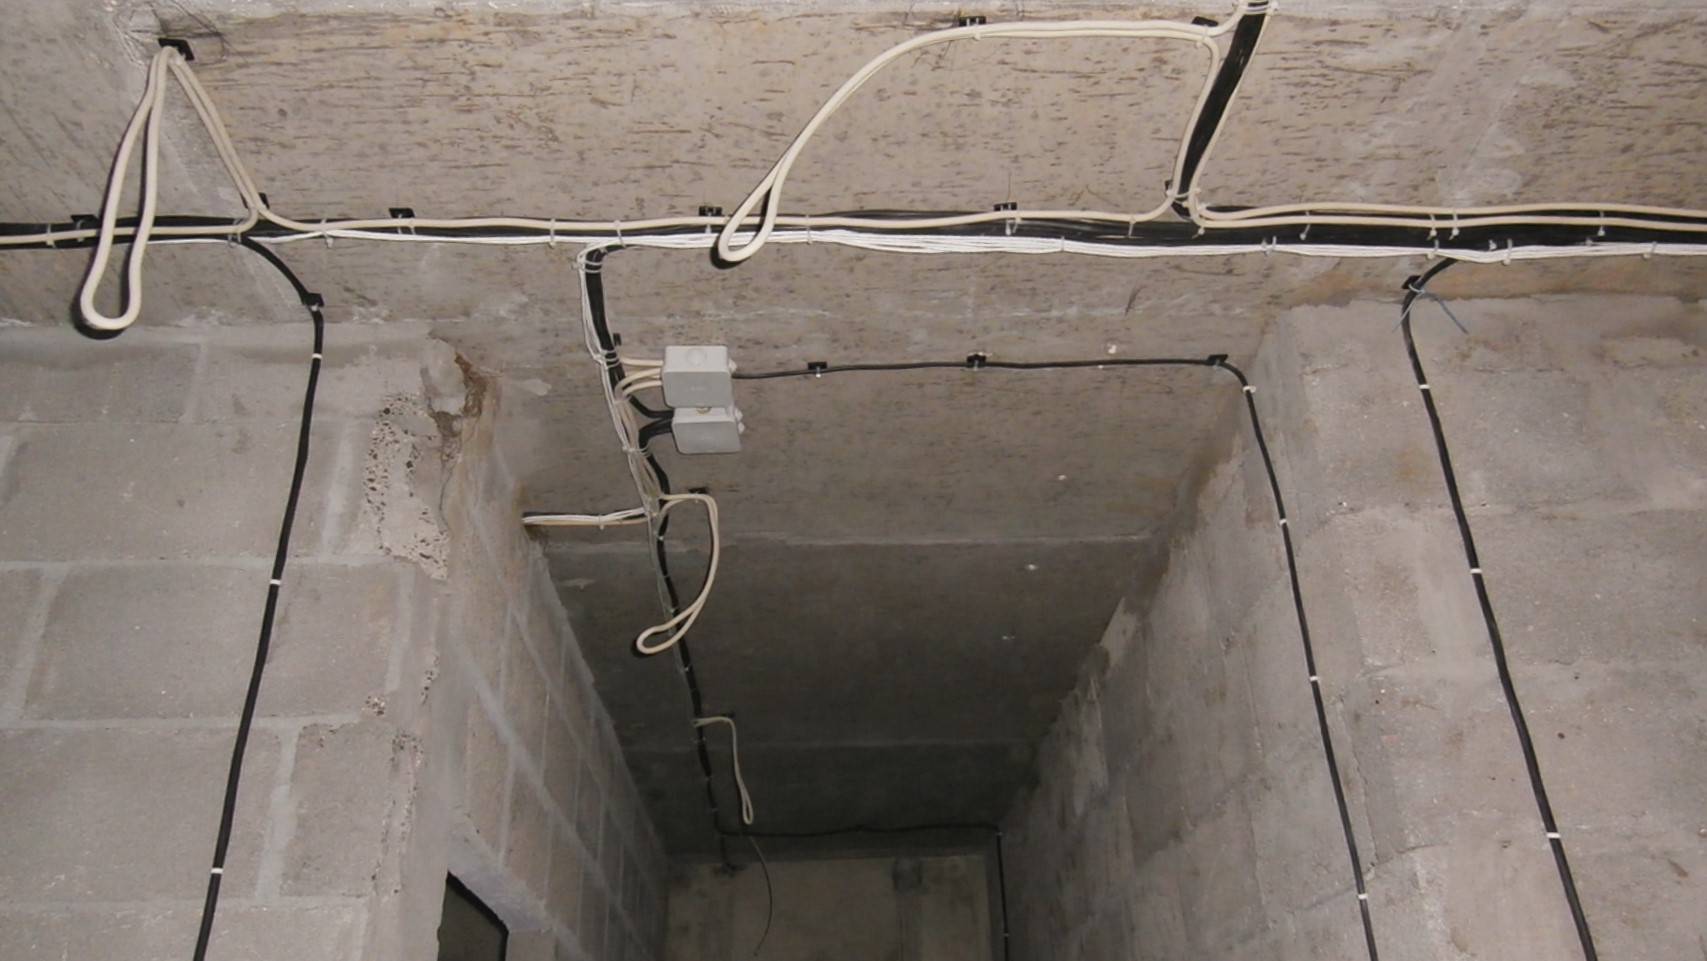 Как самостоятельно развести электропроводку в квартире по потолку